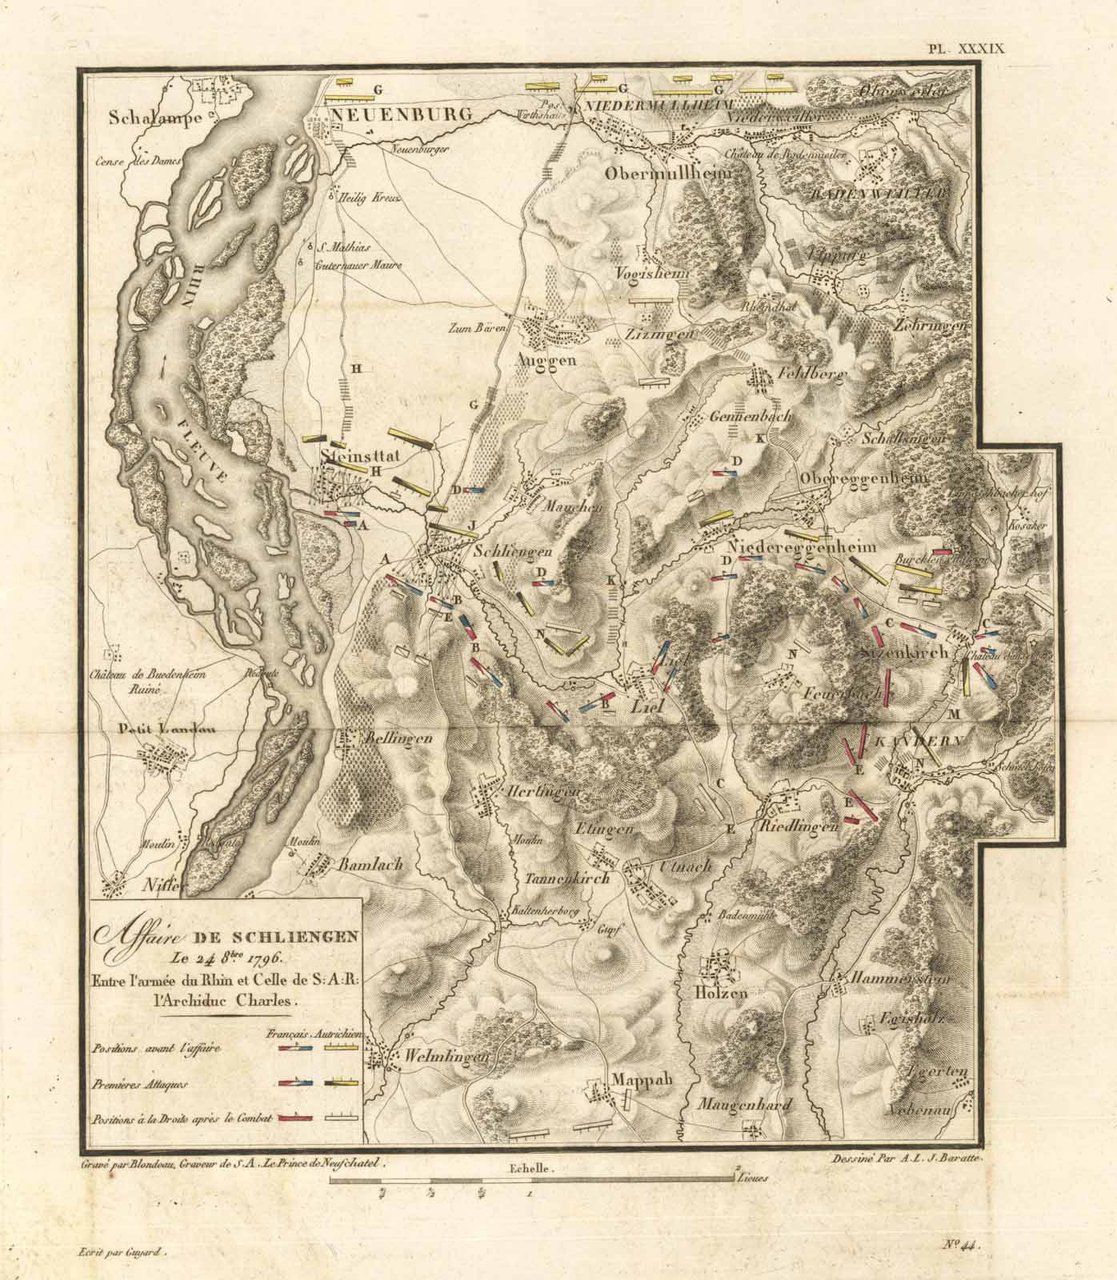 Affaire de Schliegen le 24 8bre 1796 Entre l'armée du …